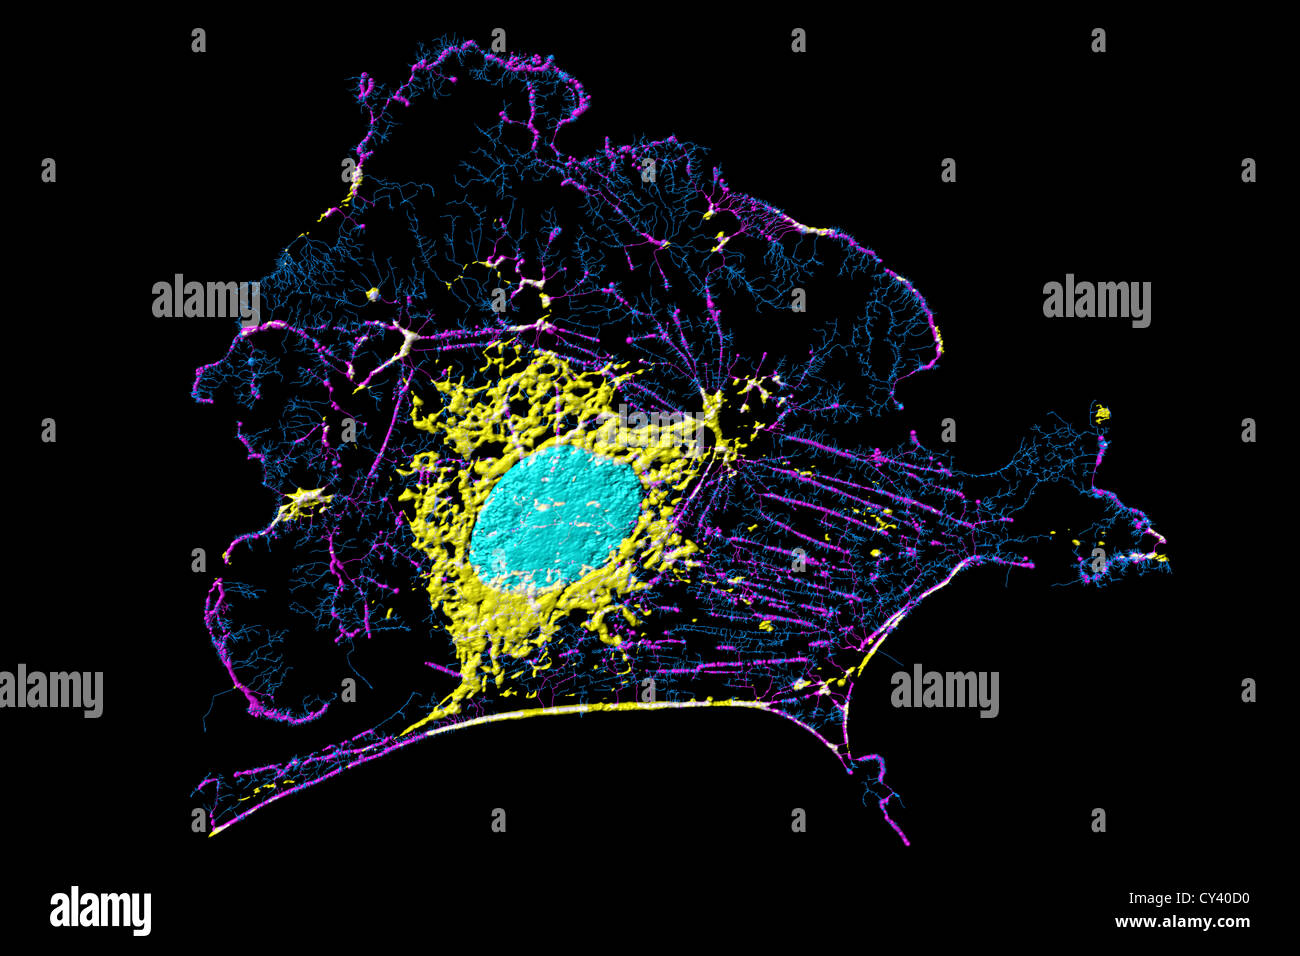 Microfilaments, mitochondria, and nuclei in fibroblast cell Stock Photo